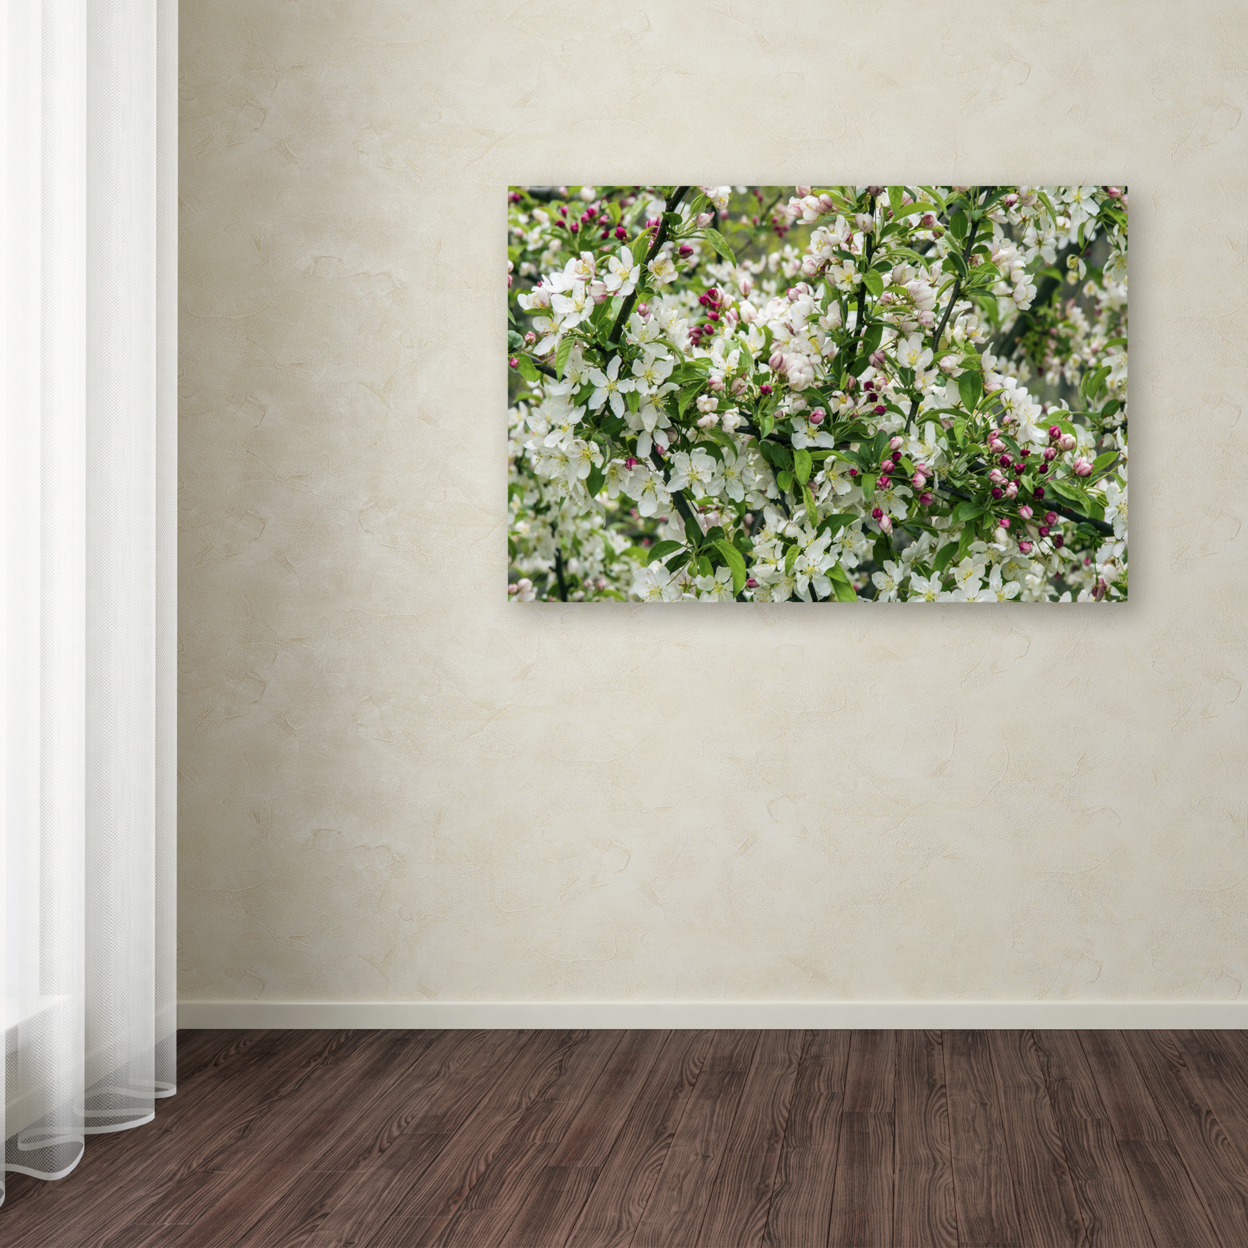 Kurt Shaffer 'Apple Blossoms' Canvas Art 16 X 24